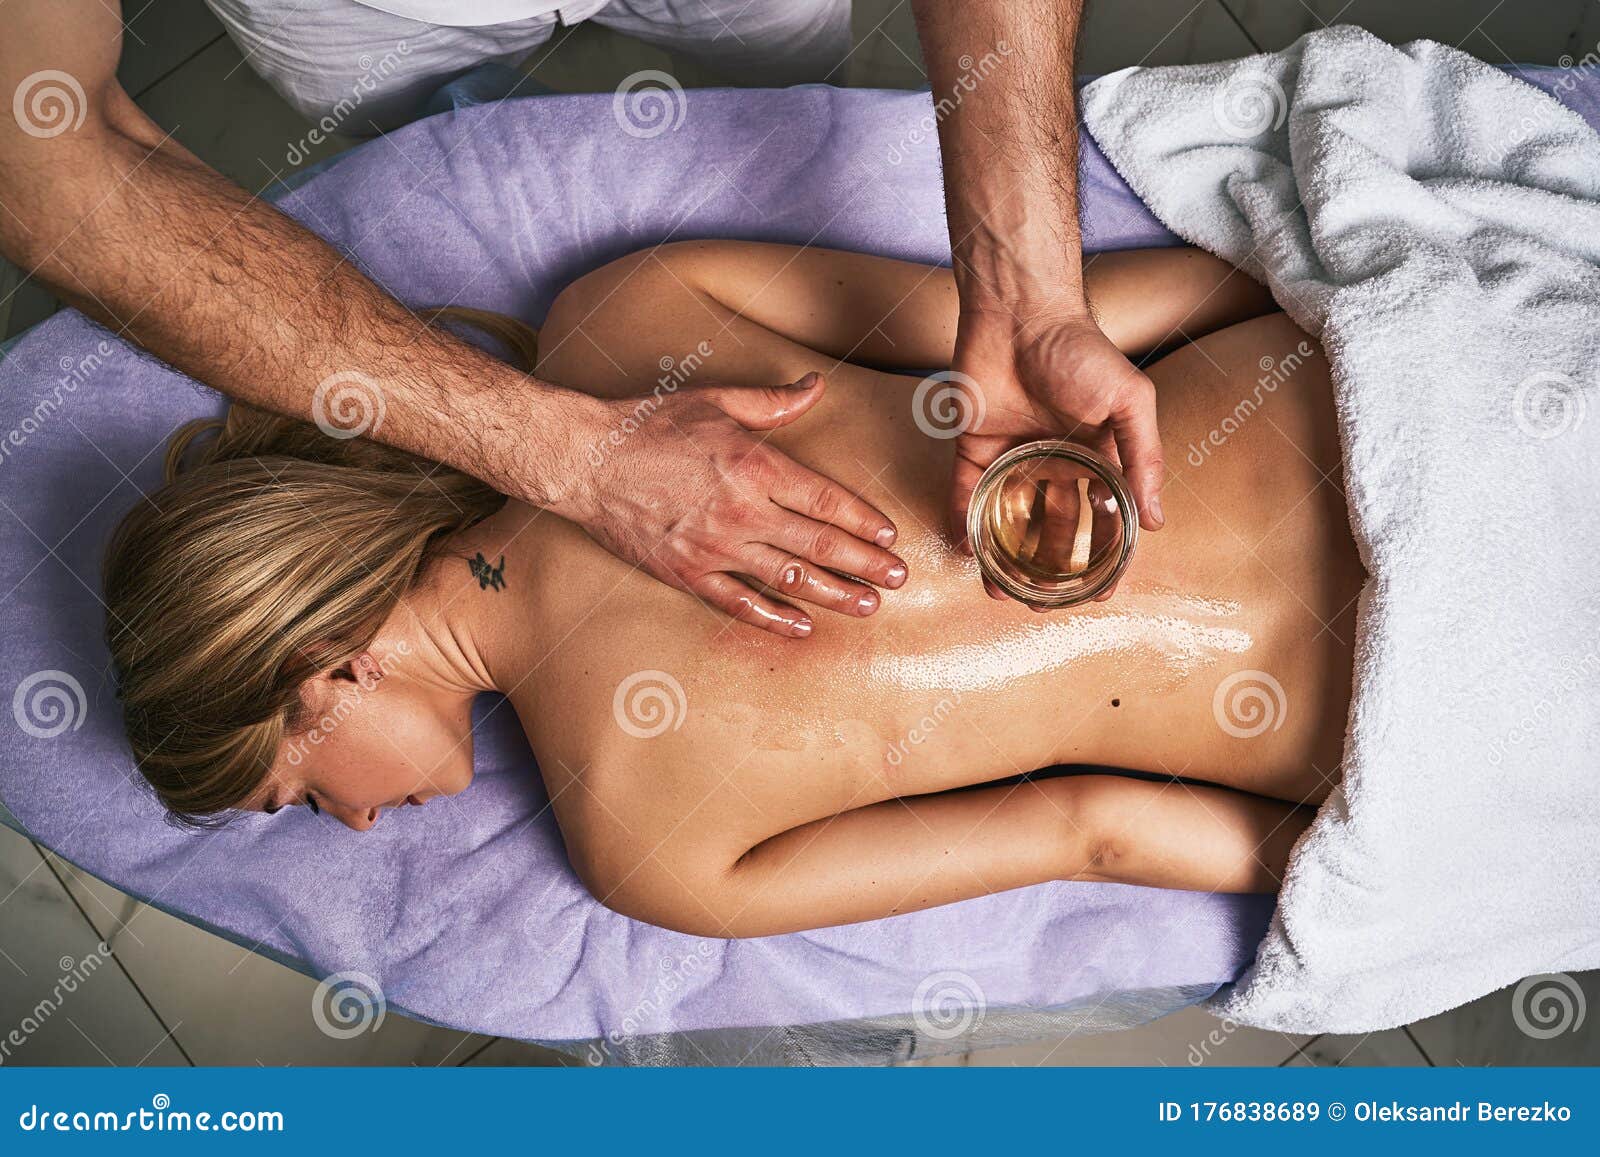 Female naked massage Sensual Erotic